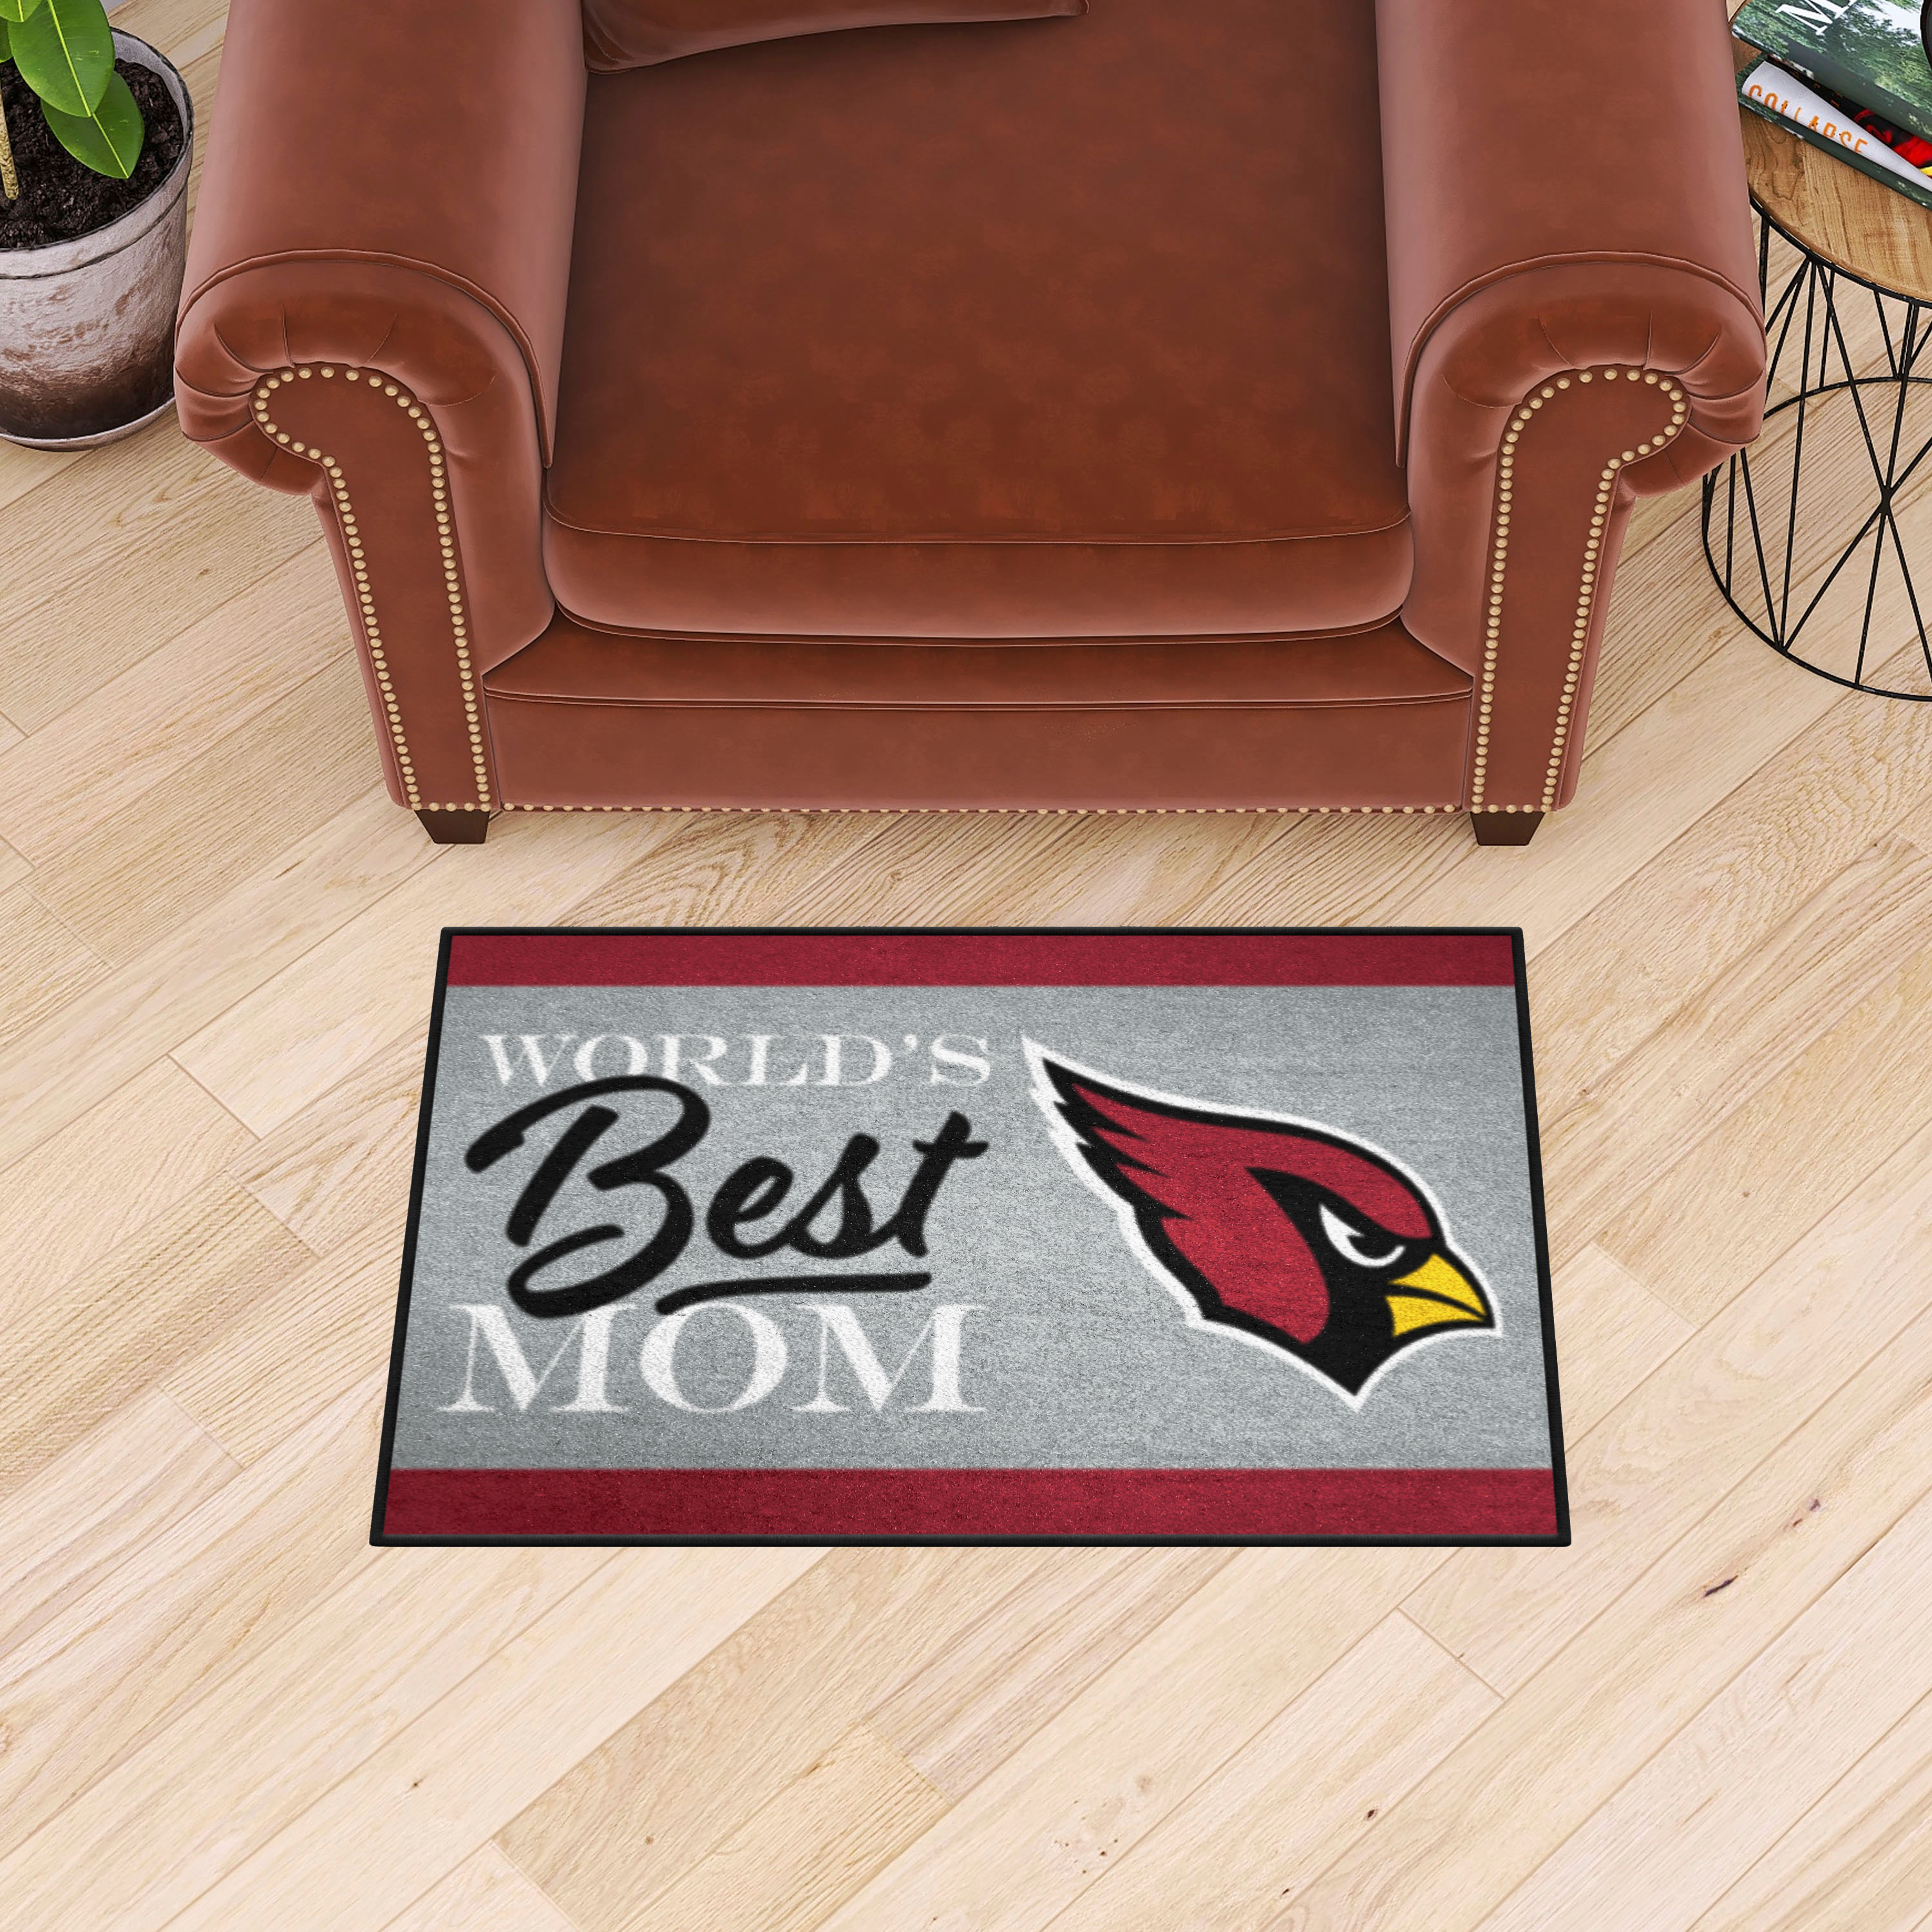 Arizona Cardinals Worldâ€™s Best Mom Starter Doormat - 19 x 30